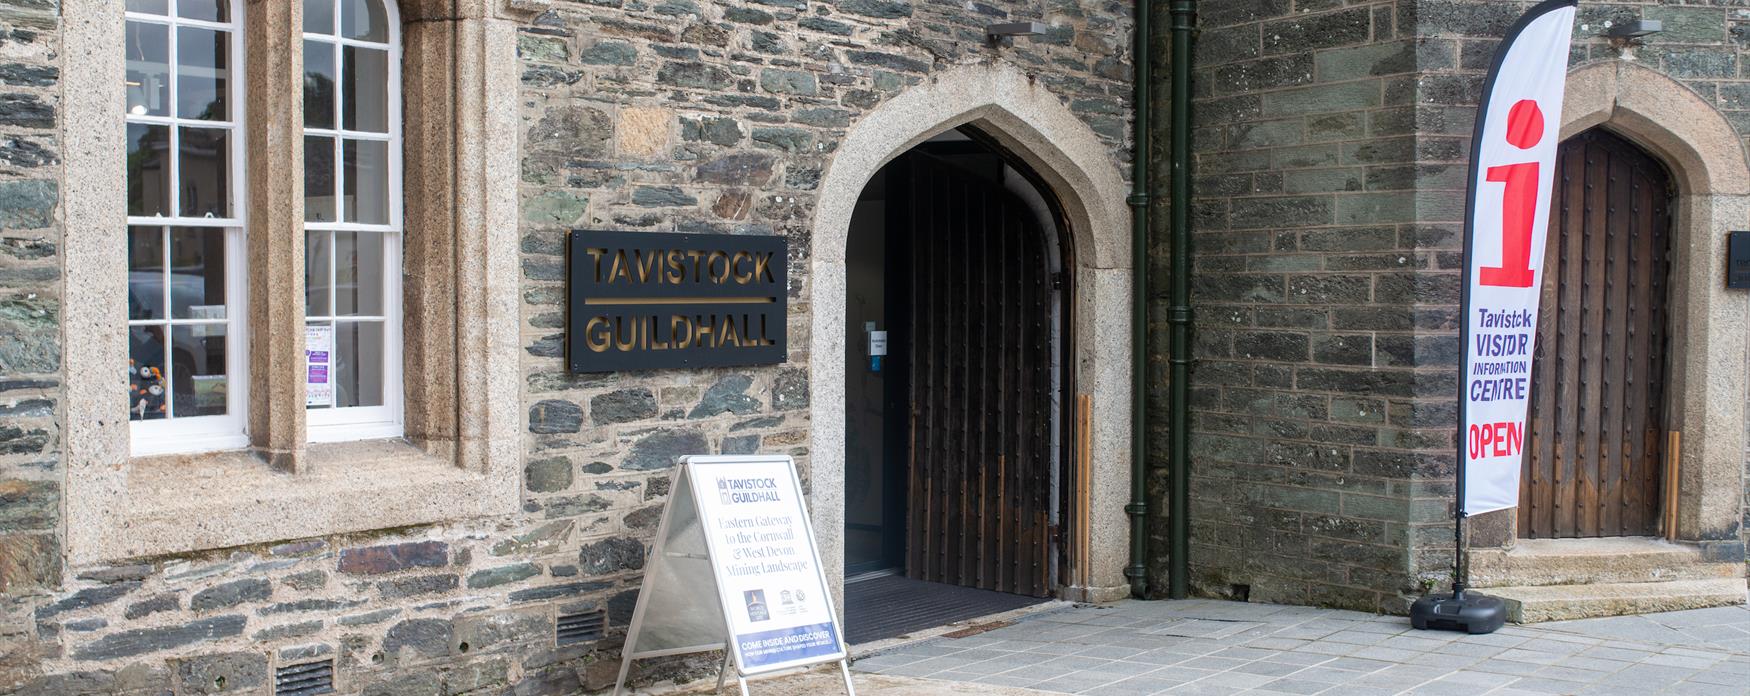 Tavistock Guildhall